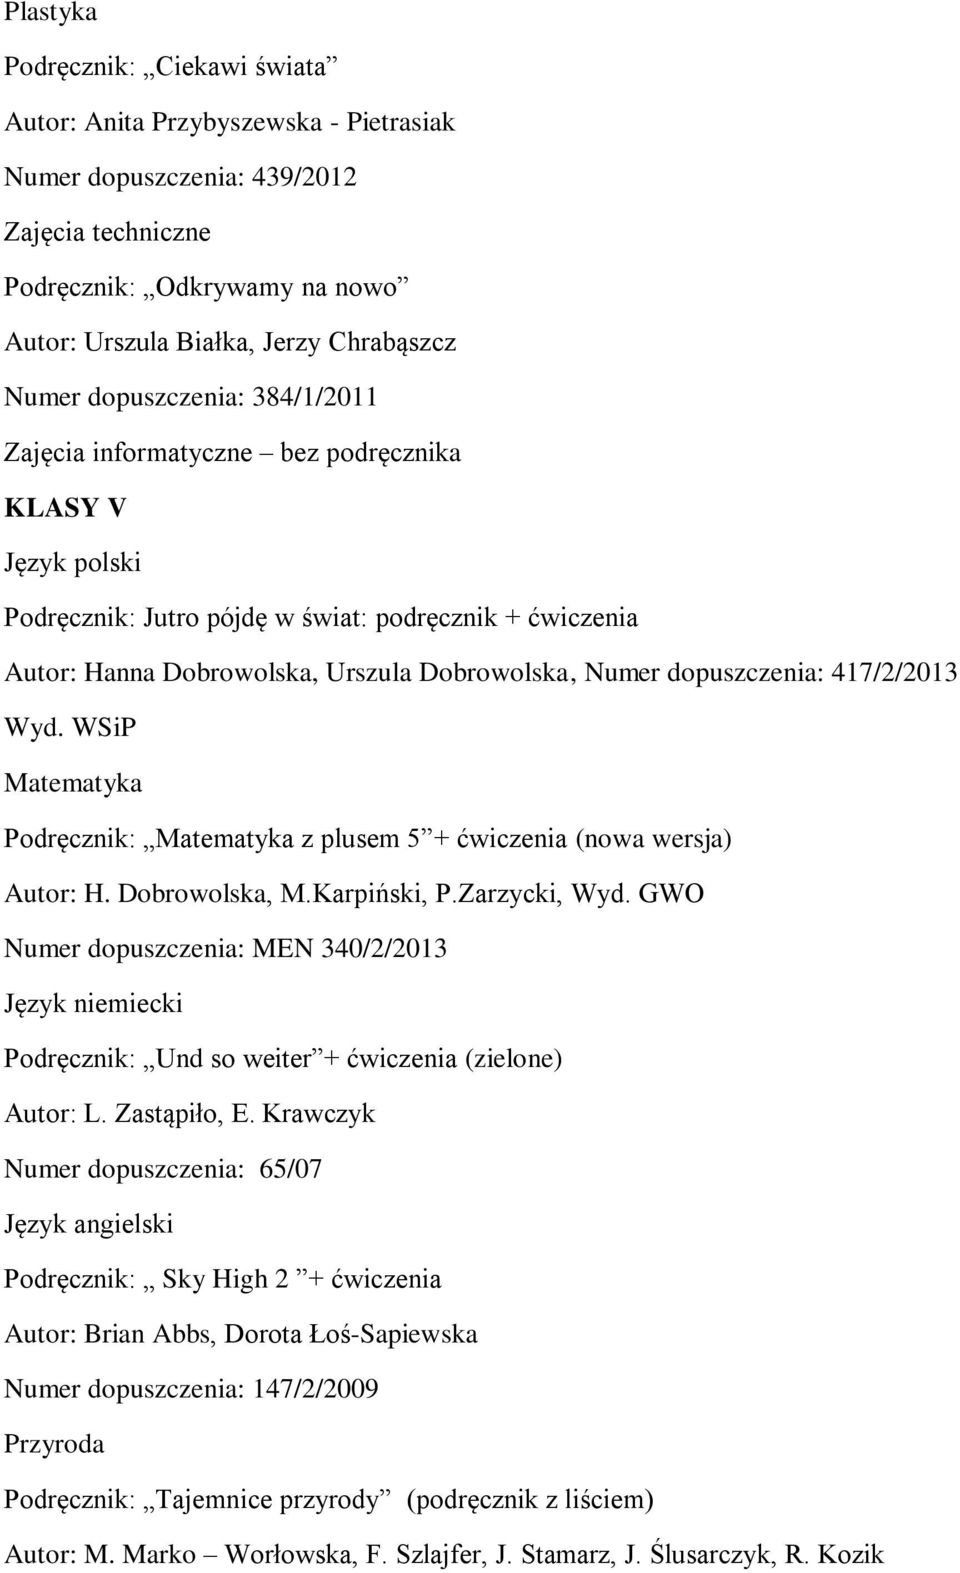 dopuszczenia: 417/2/2013 Wyd. WSiP Matematyka Podręcznik: Matematyka z plusem 5 + ćwiczenia (nowa wersja) Autor: H. Dobrowolska, M.Karpiński, P.Zarzycki, Wyd.